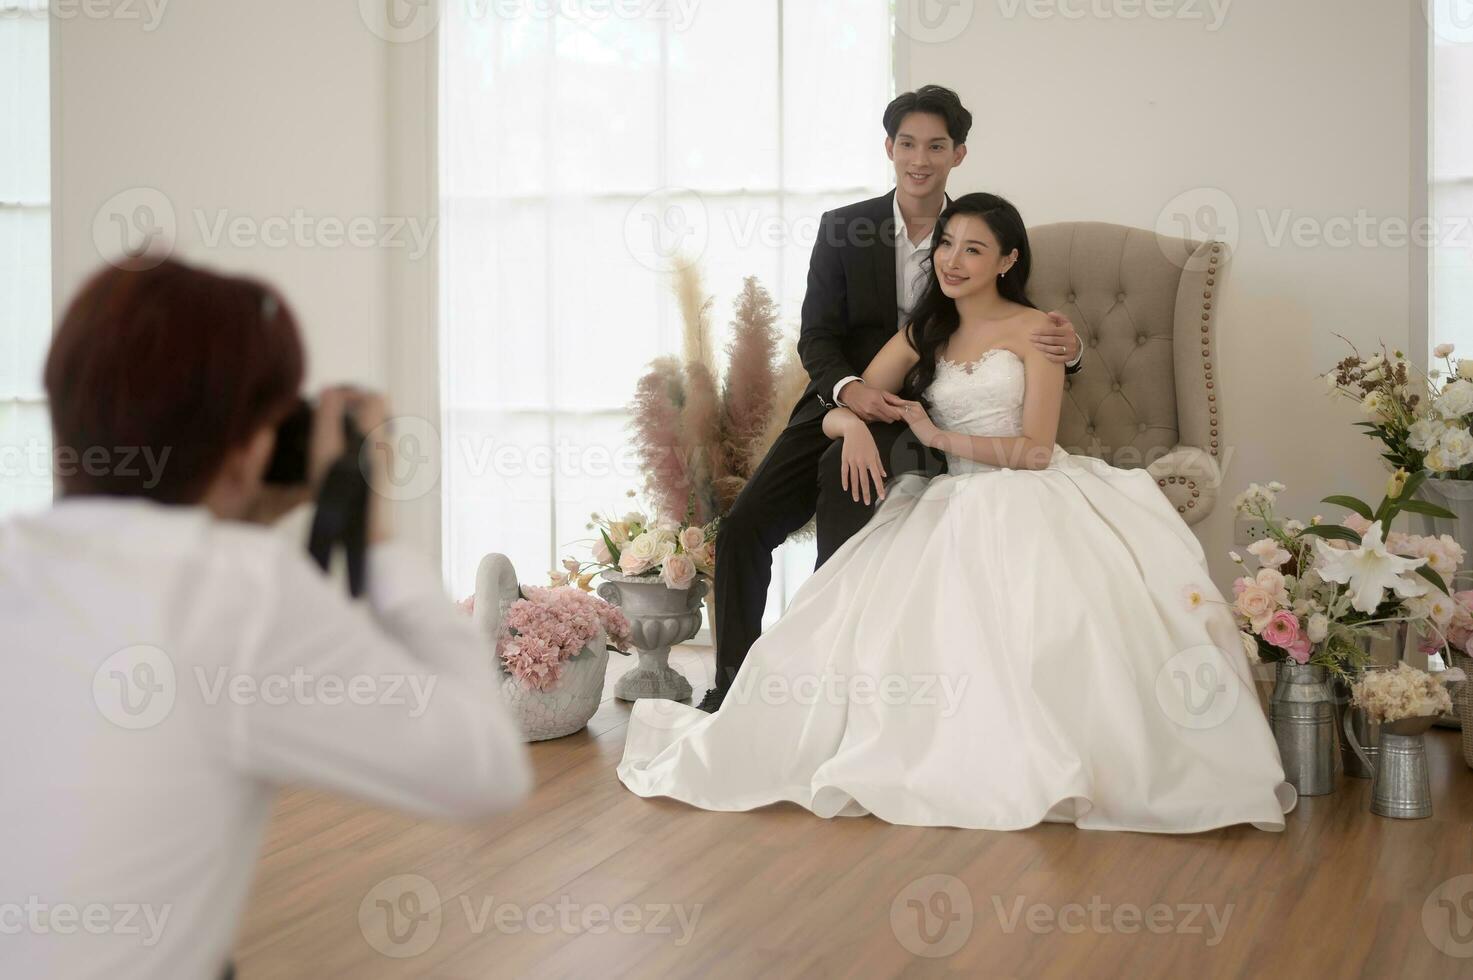 fotograaf nemen afbeeldingen van bruid en bruidegom in bruiloft ceremonie, liefde ,romantisch en bruiloft voorstel concept. foto